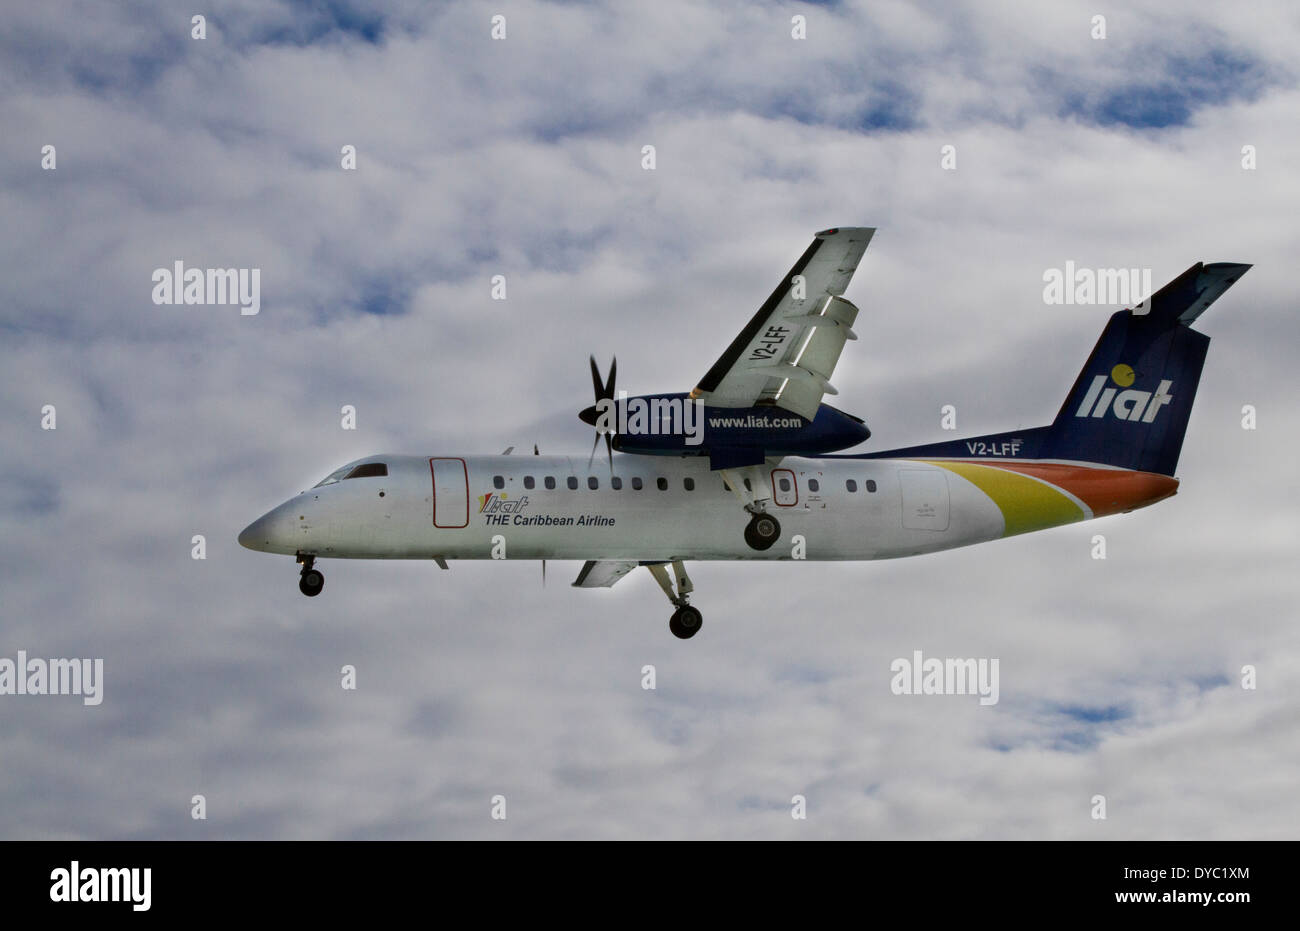 Liat airlplane landing in St Maarten Stock Photo